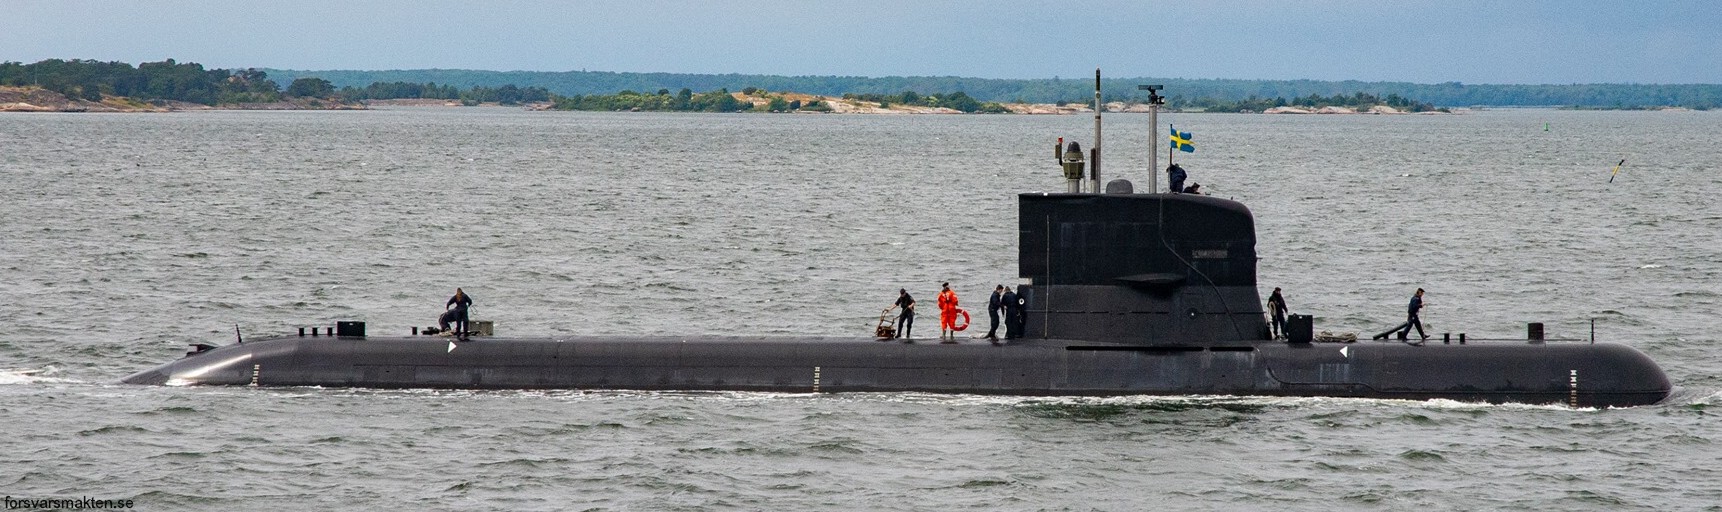 hswms hms sodermanland söd vastergotland class submarine ssk swedish navy svenska marinen försvarsmakten kockums 16